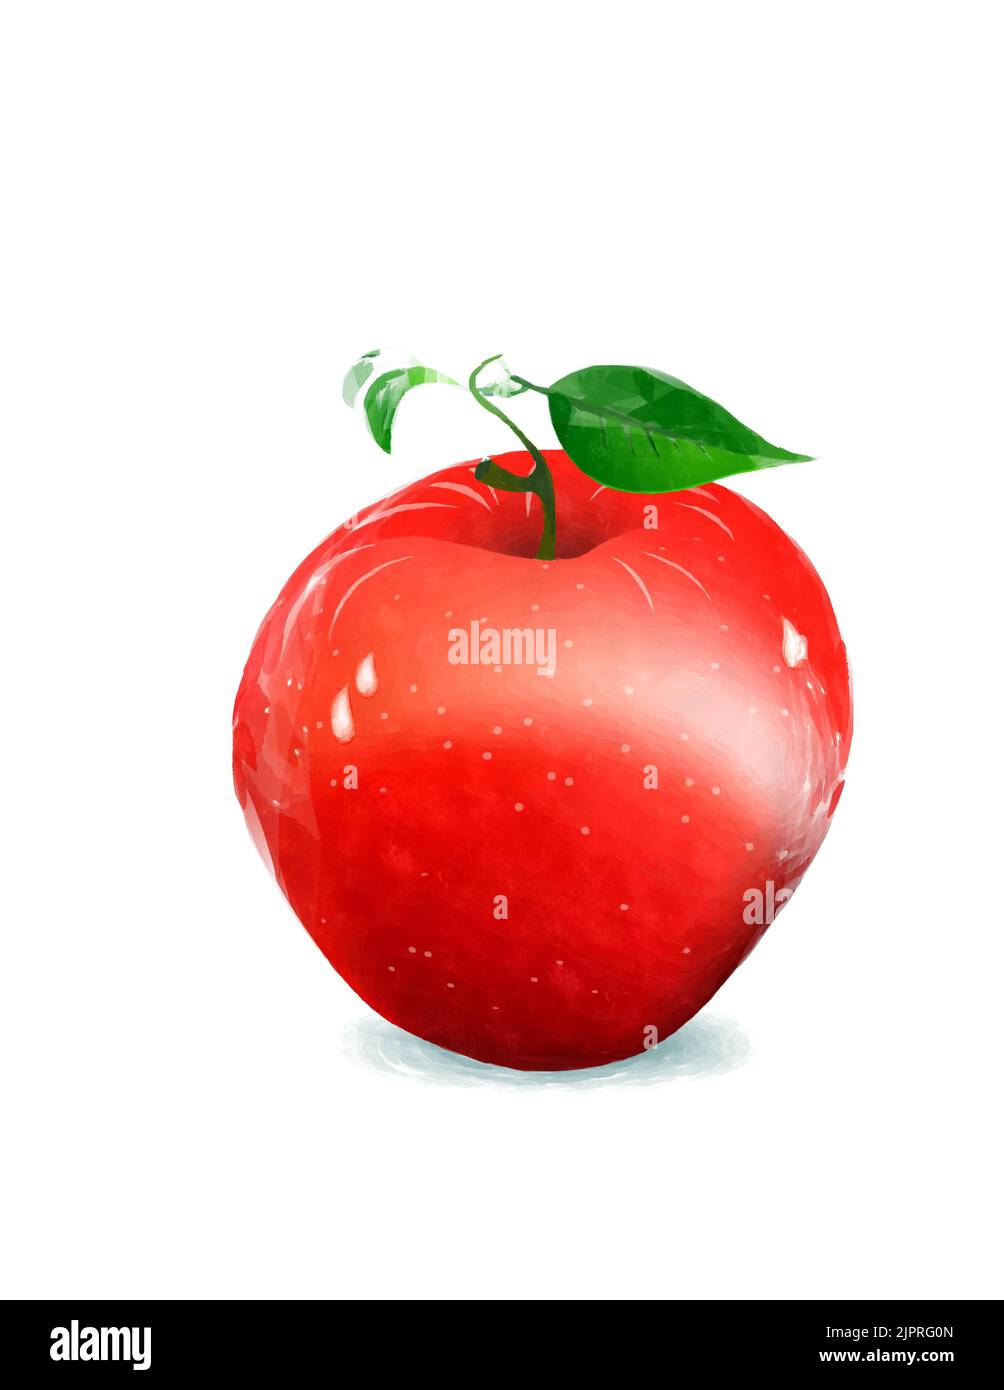 Dessin de style aquarelle d'une pomme rouge sur fond blanc Banque D'Images